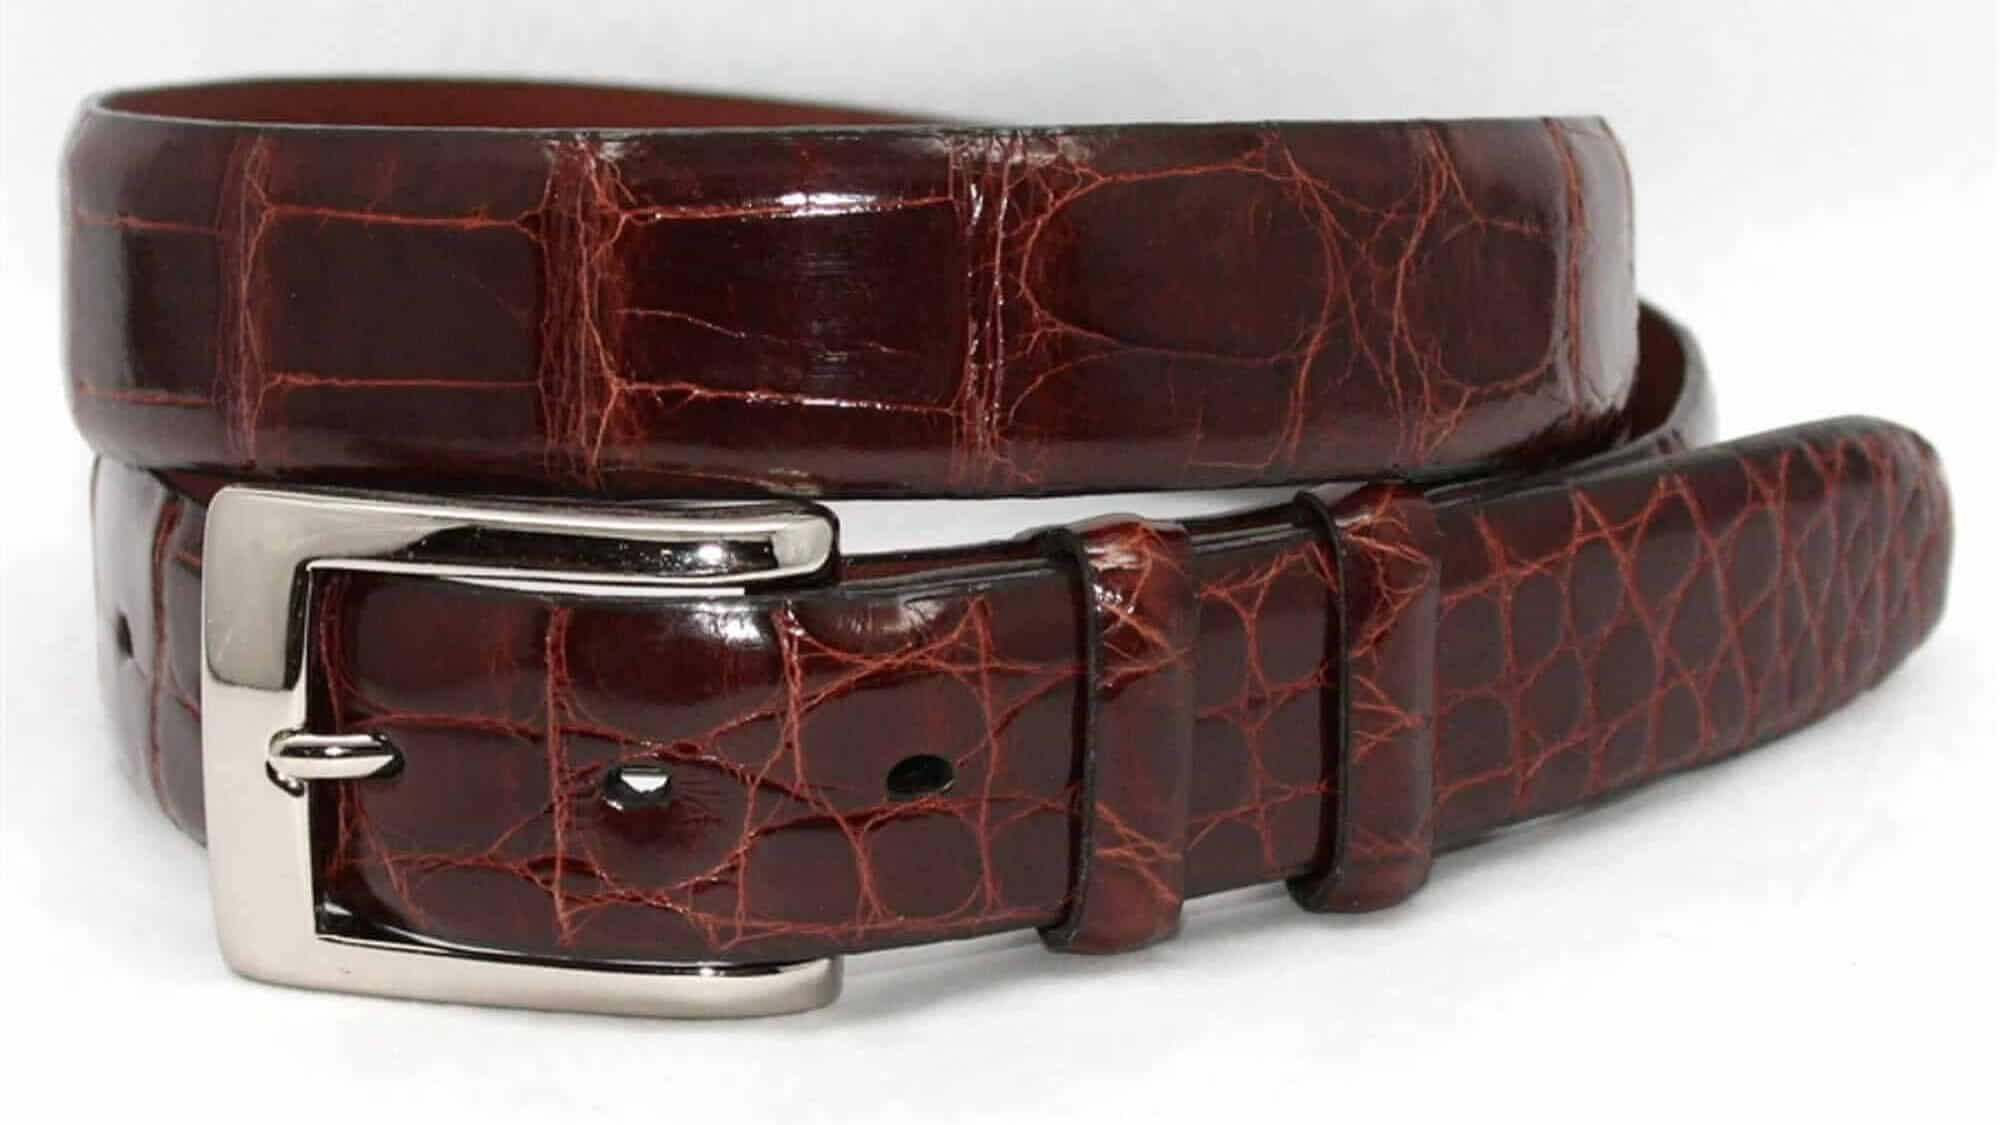 An American alligator dress belt